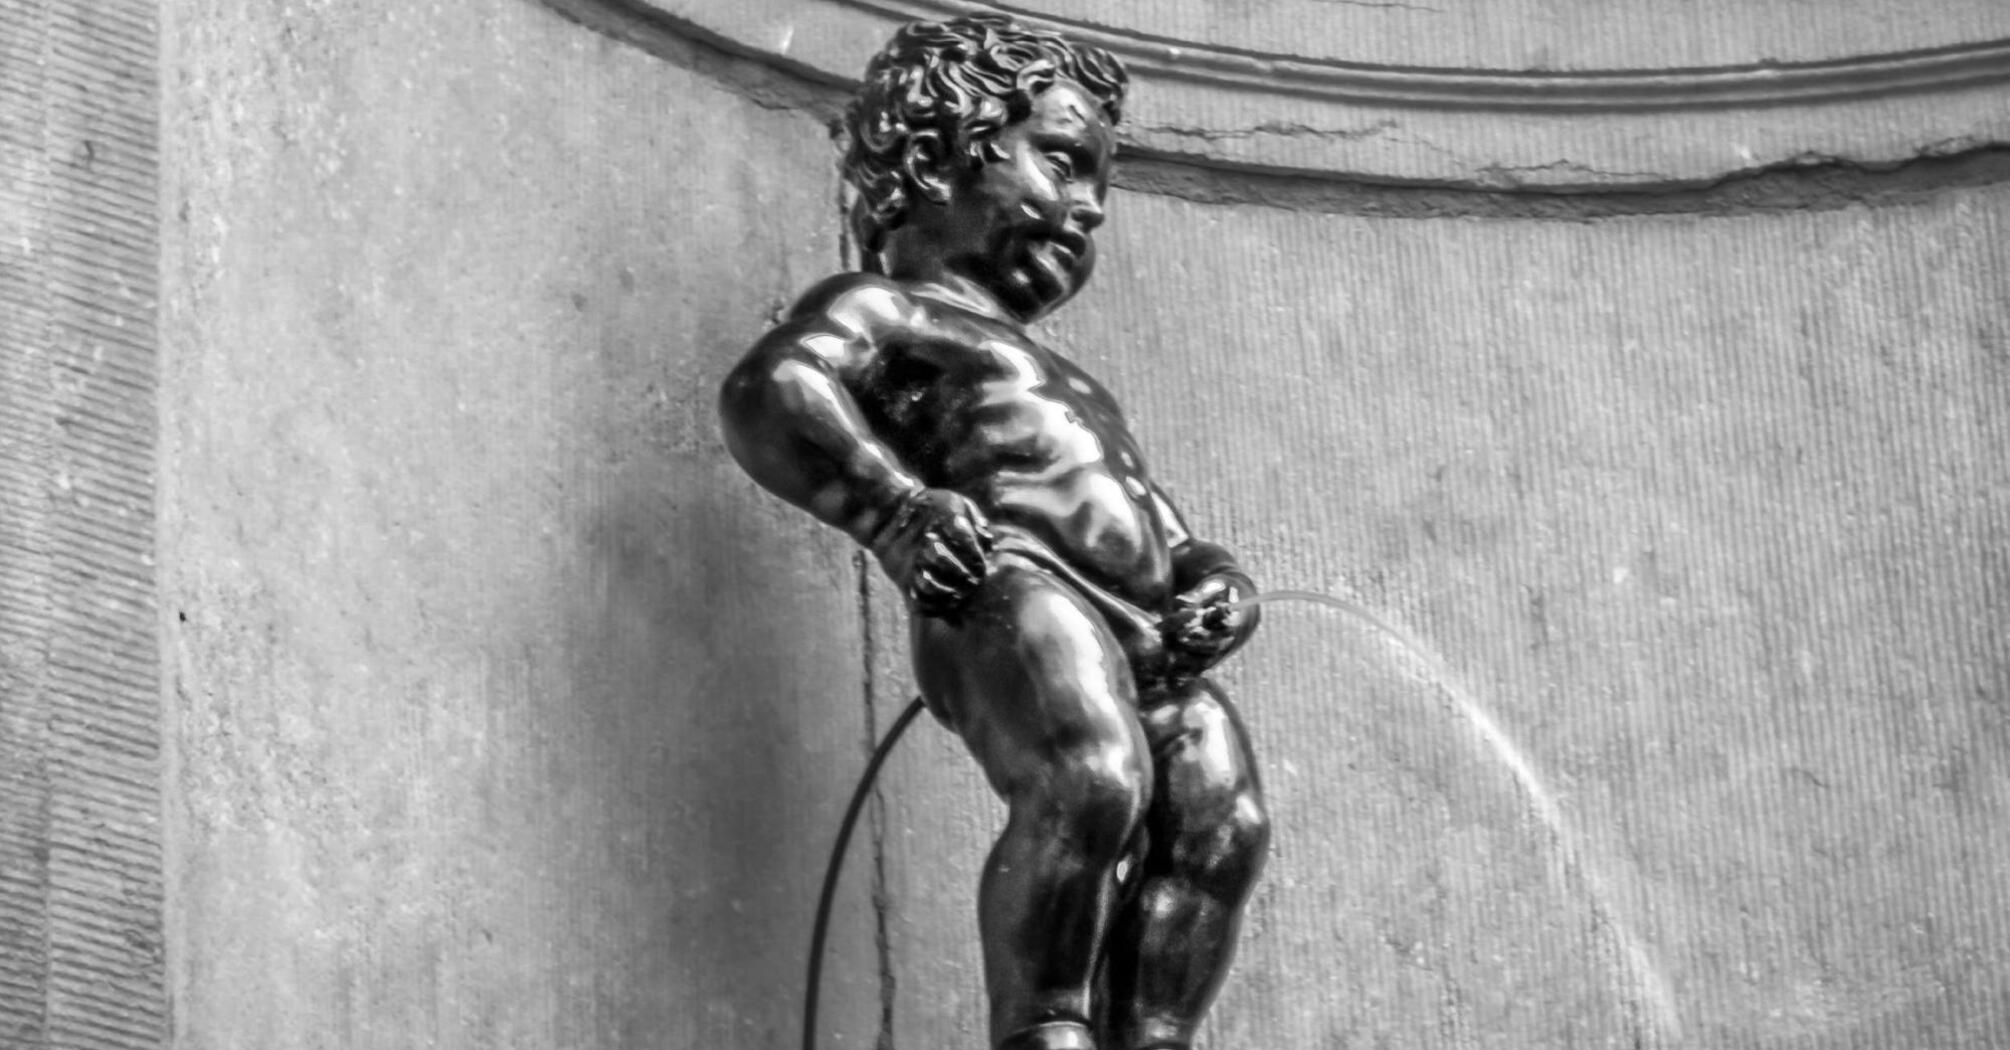 A bronze statue of a little boy urinating